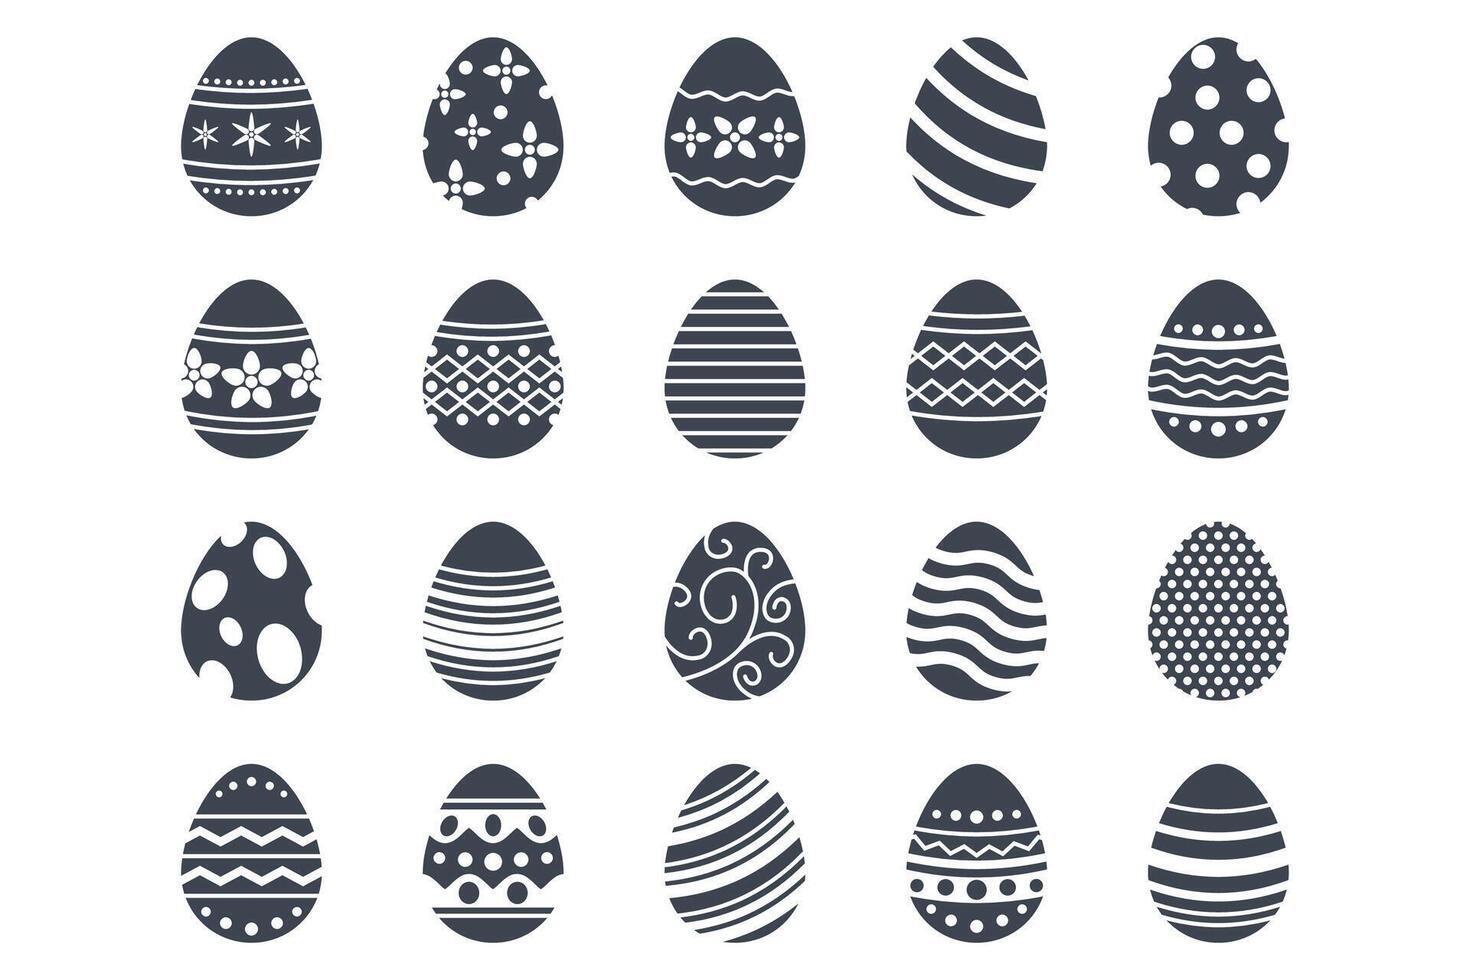 Pascua de Resurrección huevos, Pascua de Resurrección día festival icono colocar, ostern huevo íconos con decoración patrones símbolos recopilación, logo aislado vector ilustración